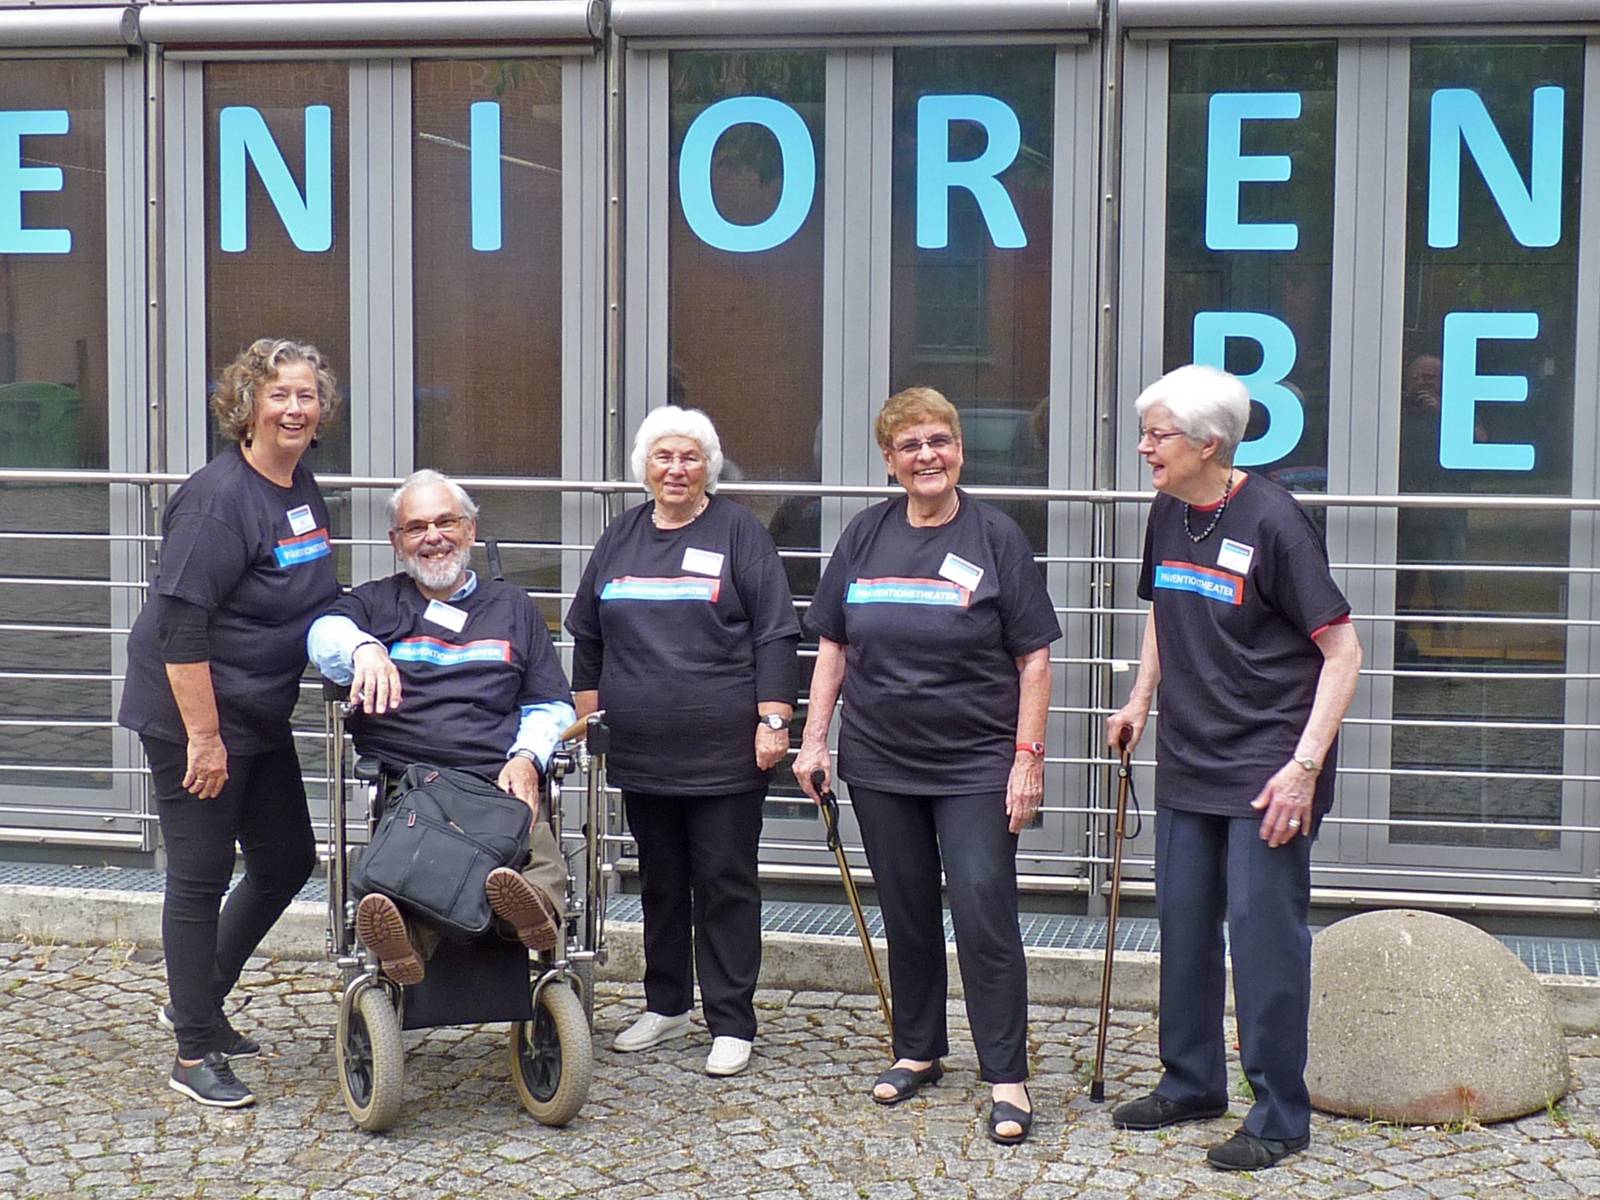 Gruppenaufnahme von vier älteren Damen und einem älteren Herrn, die jeweils T-Shirts mit der Aufschrift "Präventionstheater" tragen.